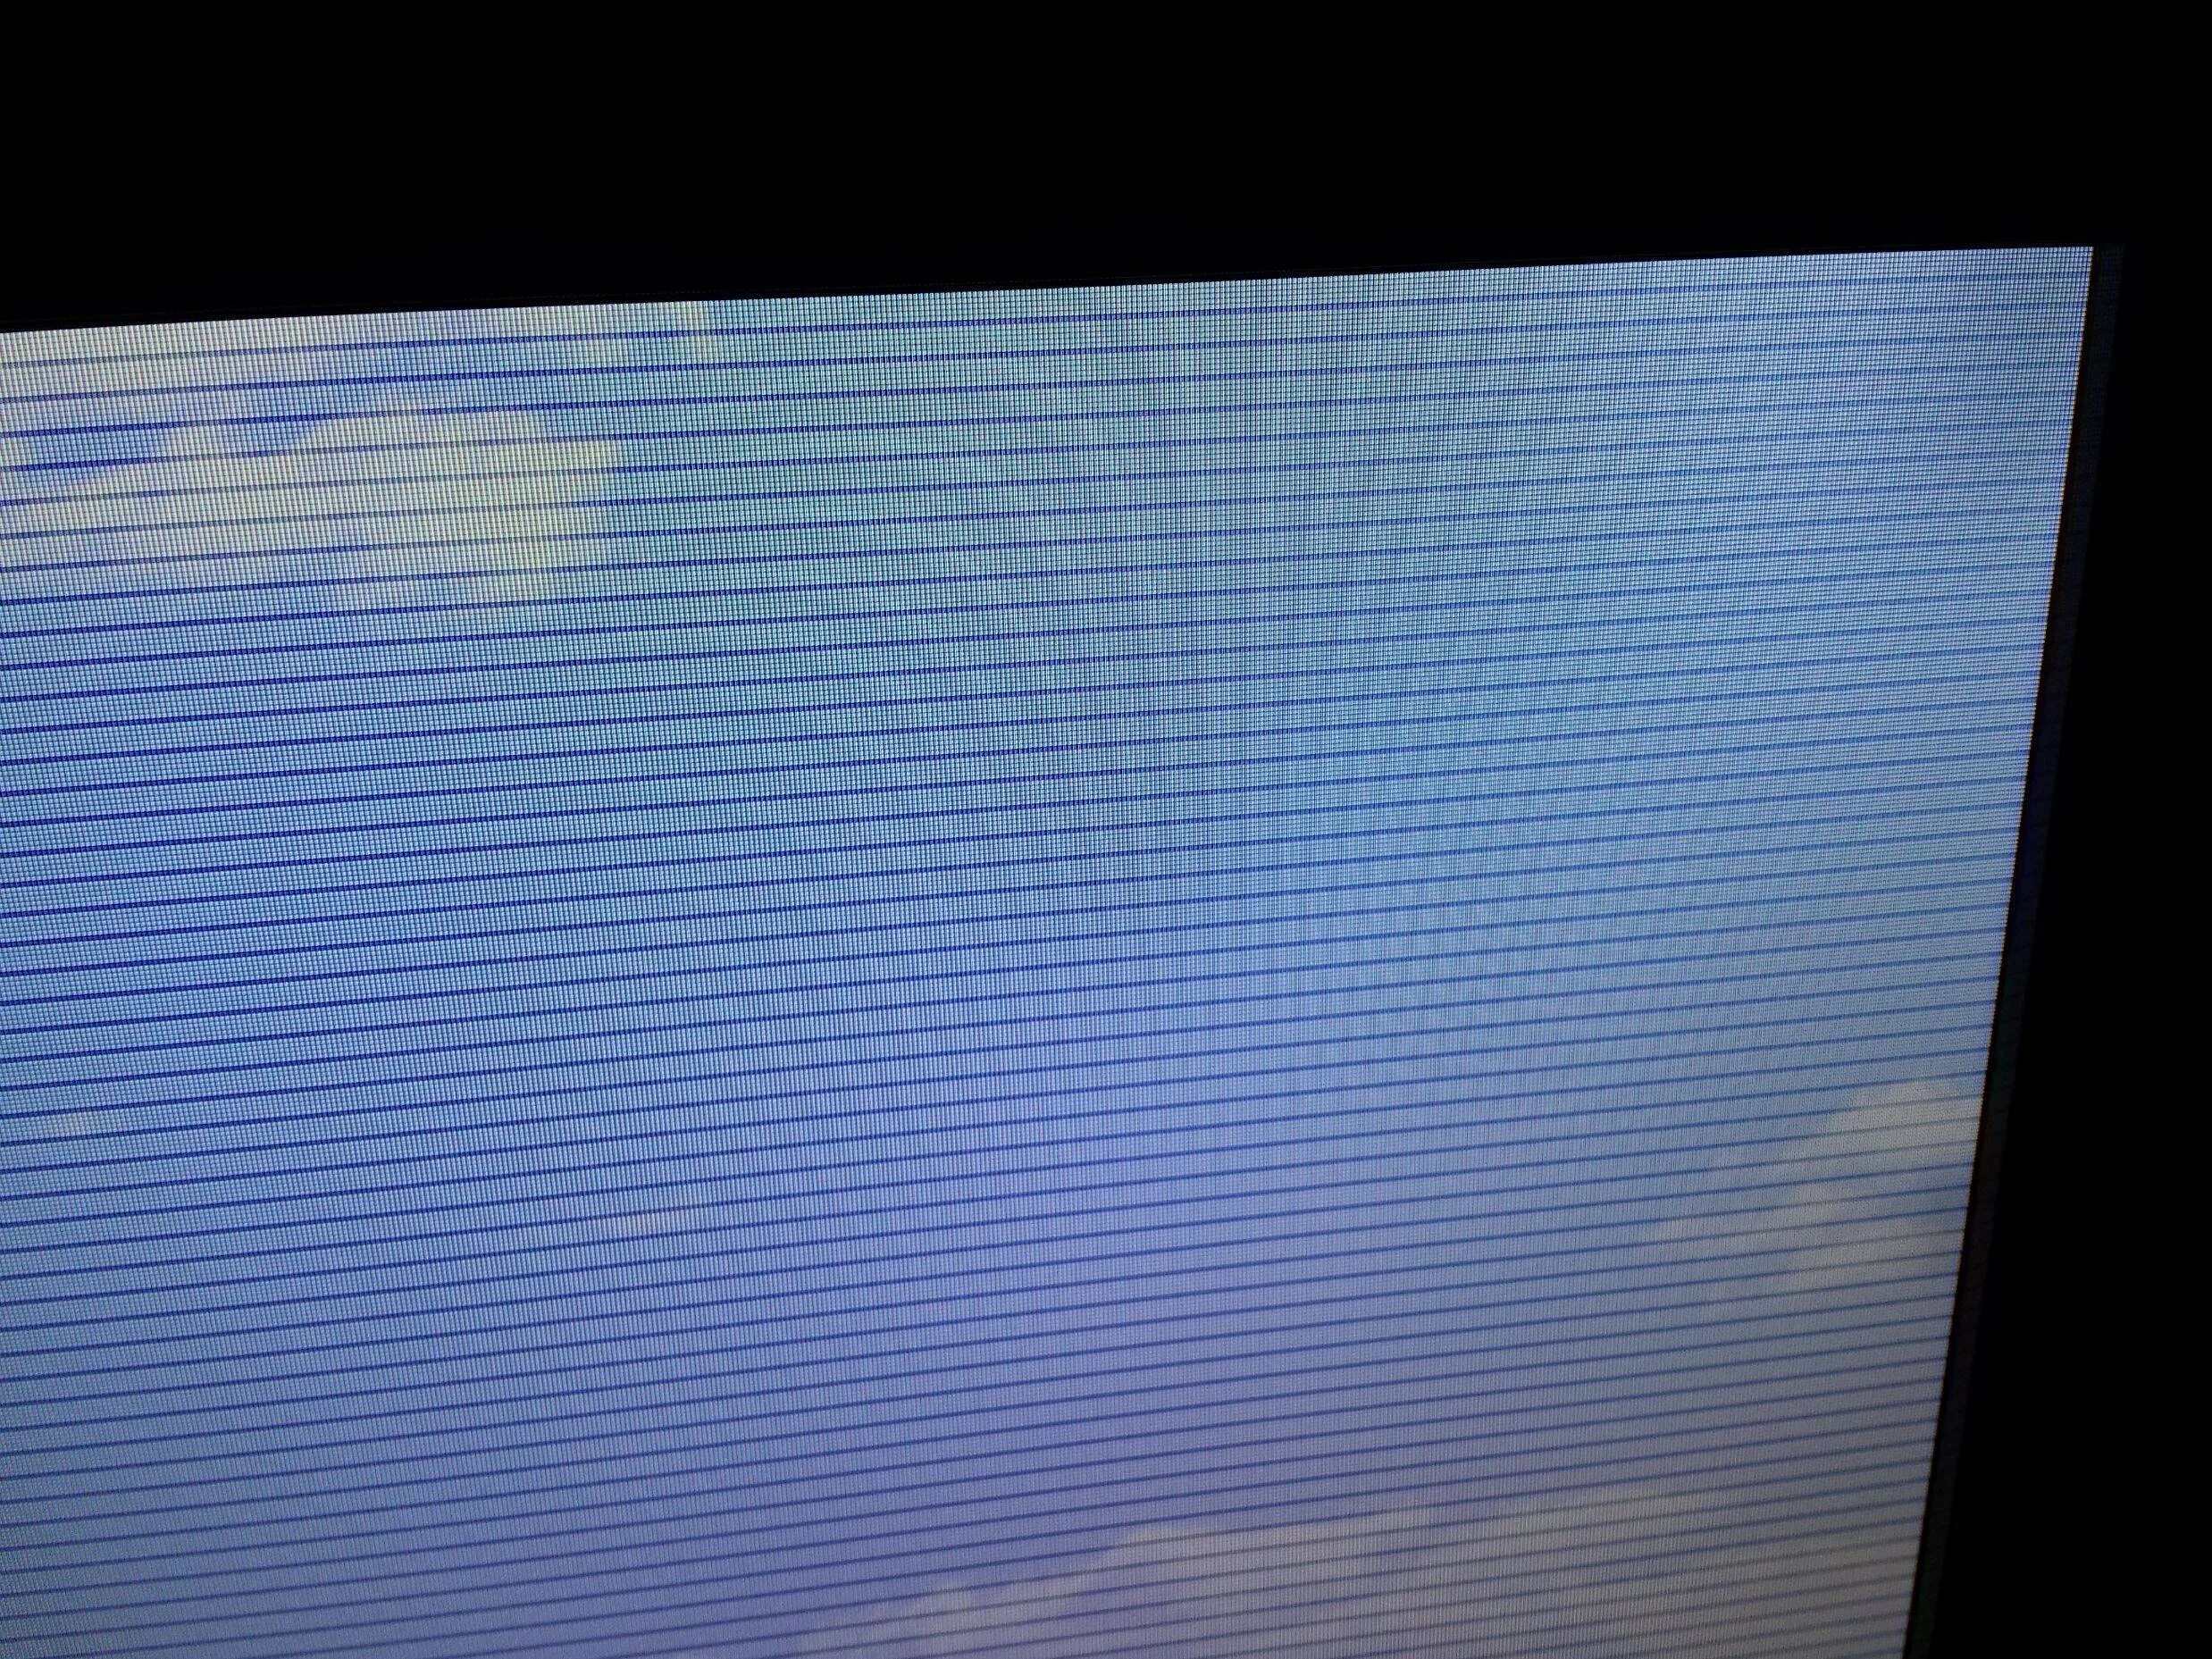 Полосы на экране 6. Телевизор Филипс горизонтальные полосы на экране. Телевизор самсунг рябит экран. Lta400hm15 горизонтальные полосы. Вертикальные полосы на экране телевизора LG 32ln541u.